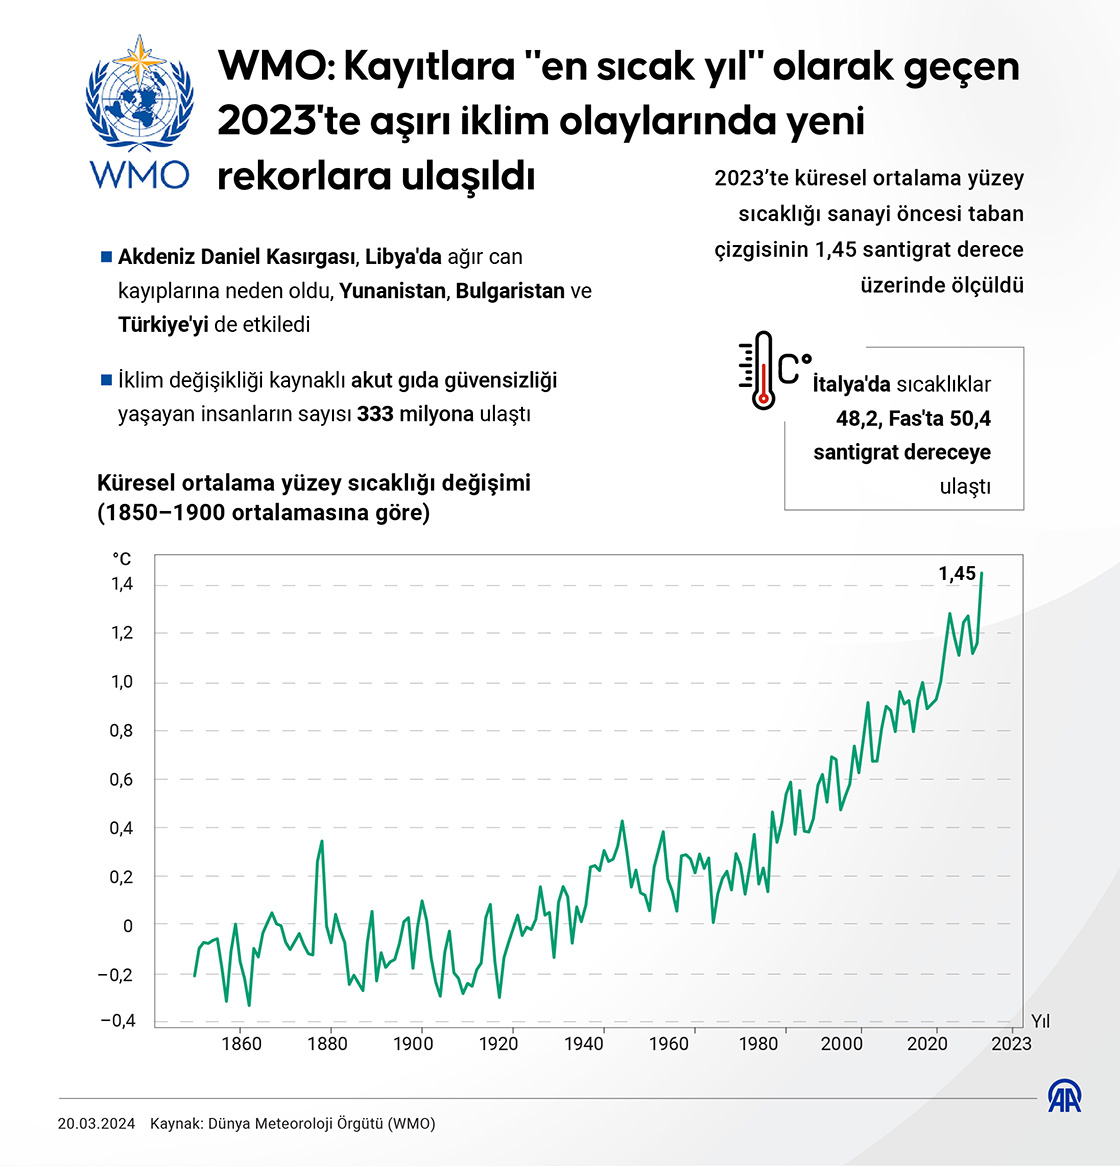 WMO: Kayıtlara ‘en sıcak yıl’ olarak geçen 2023’te aşırı iklim olaylarında yeni rekorlara ulaşıldı